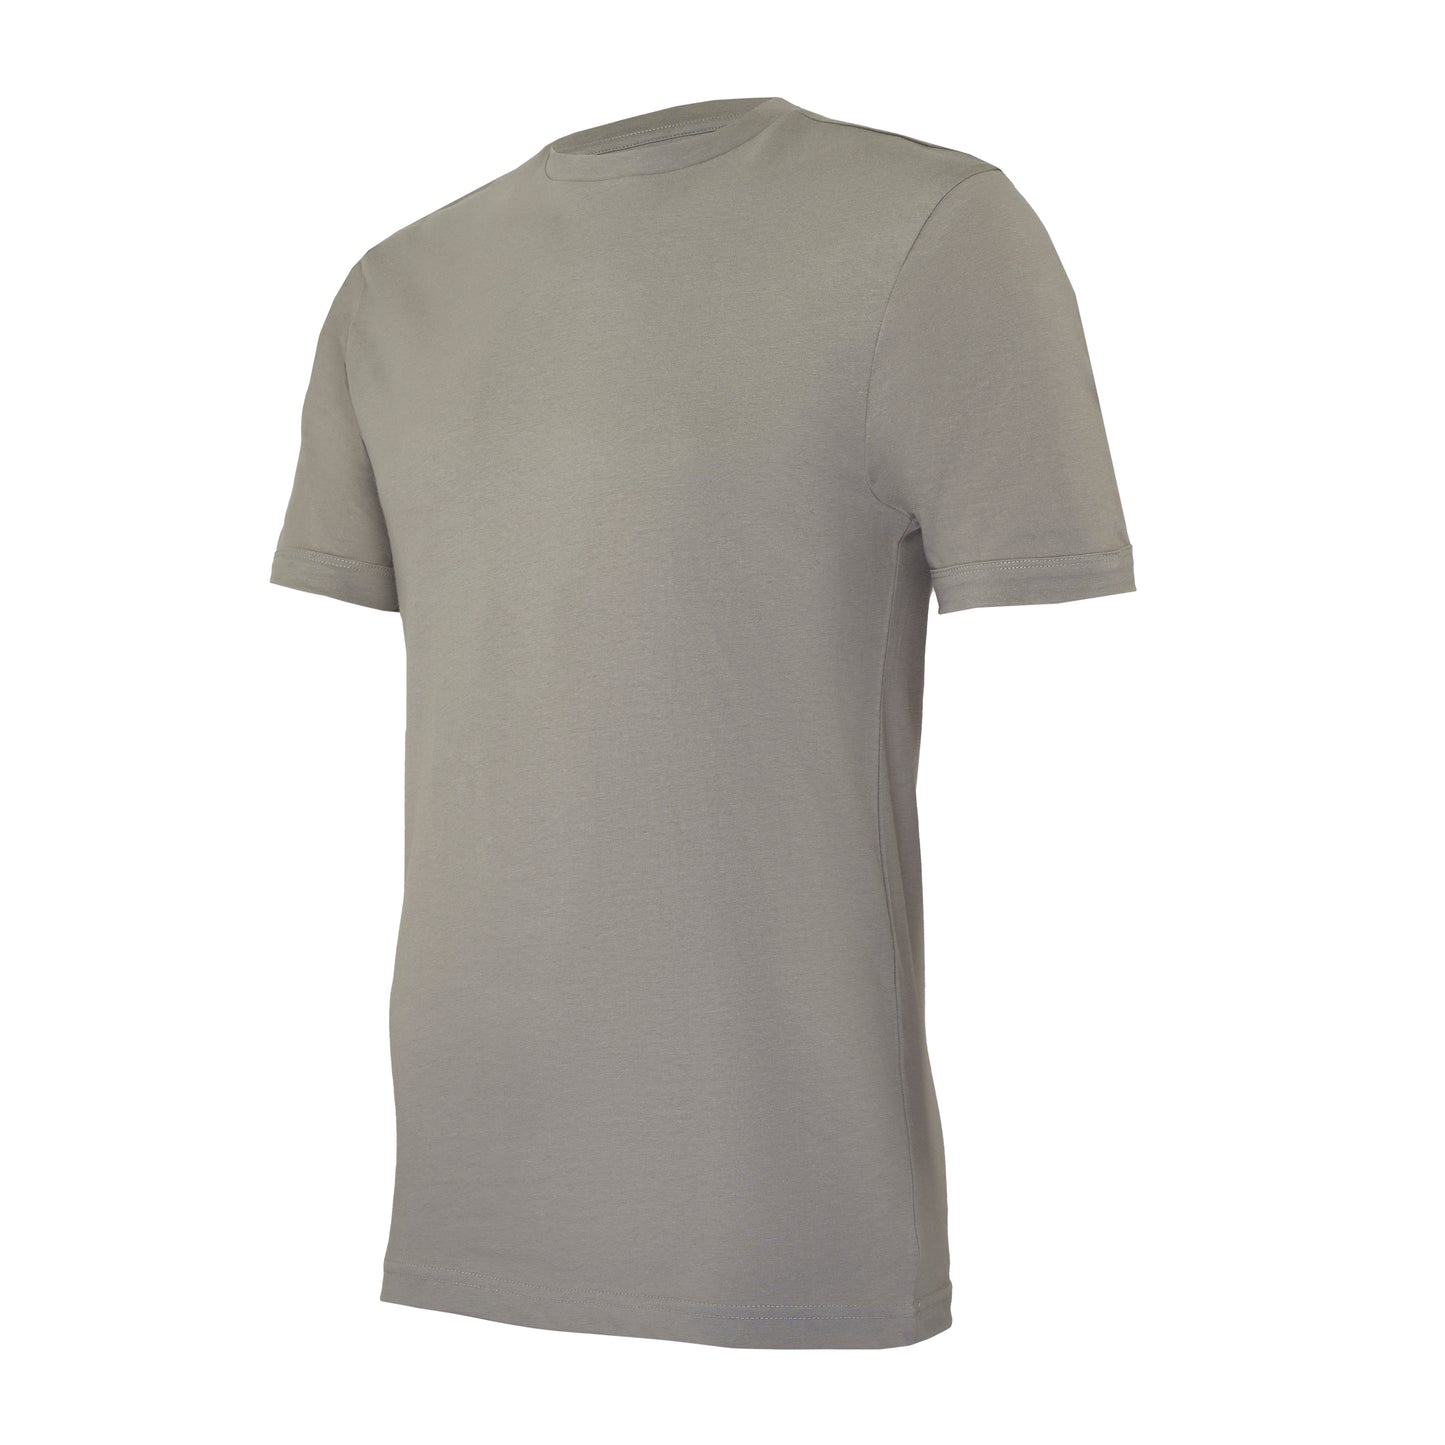 Col rond serré, gris cendré, coupe slim, T-shirt – pack de 2 ou 4